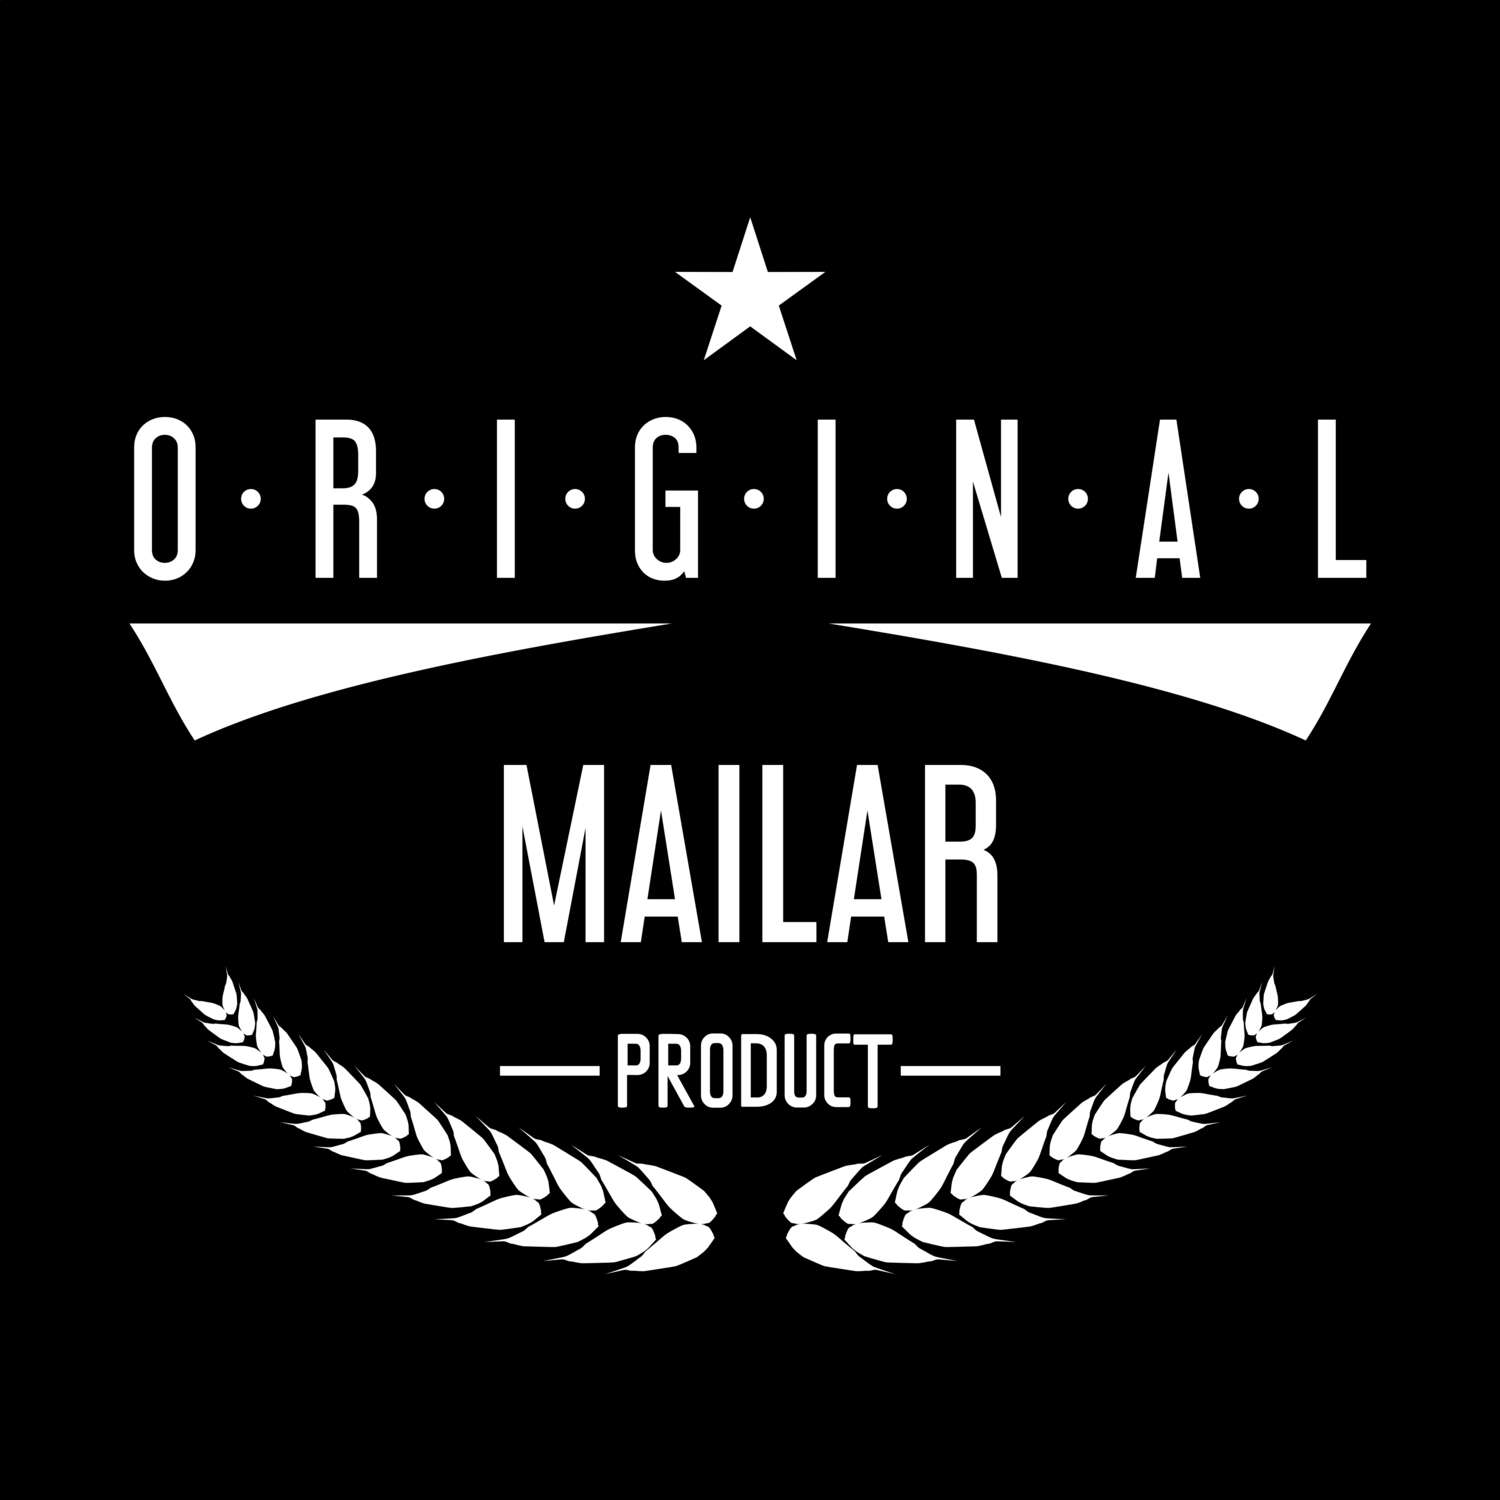 Mailar T-Shirt »Original Product«